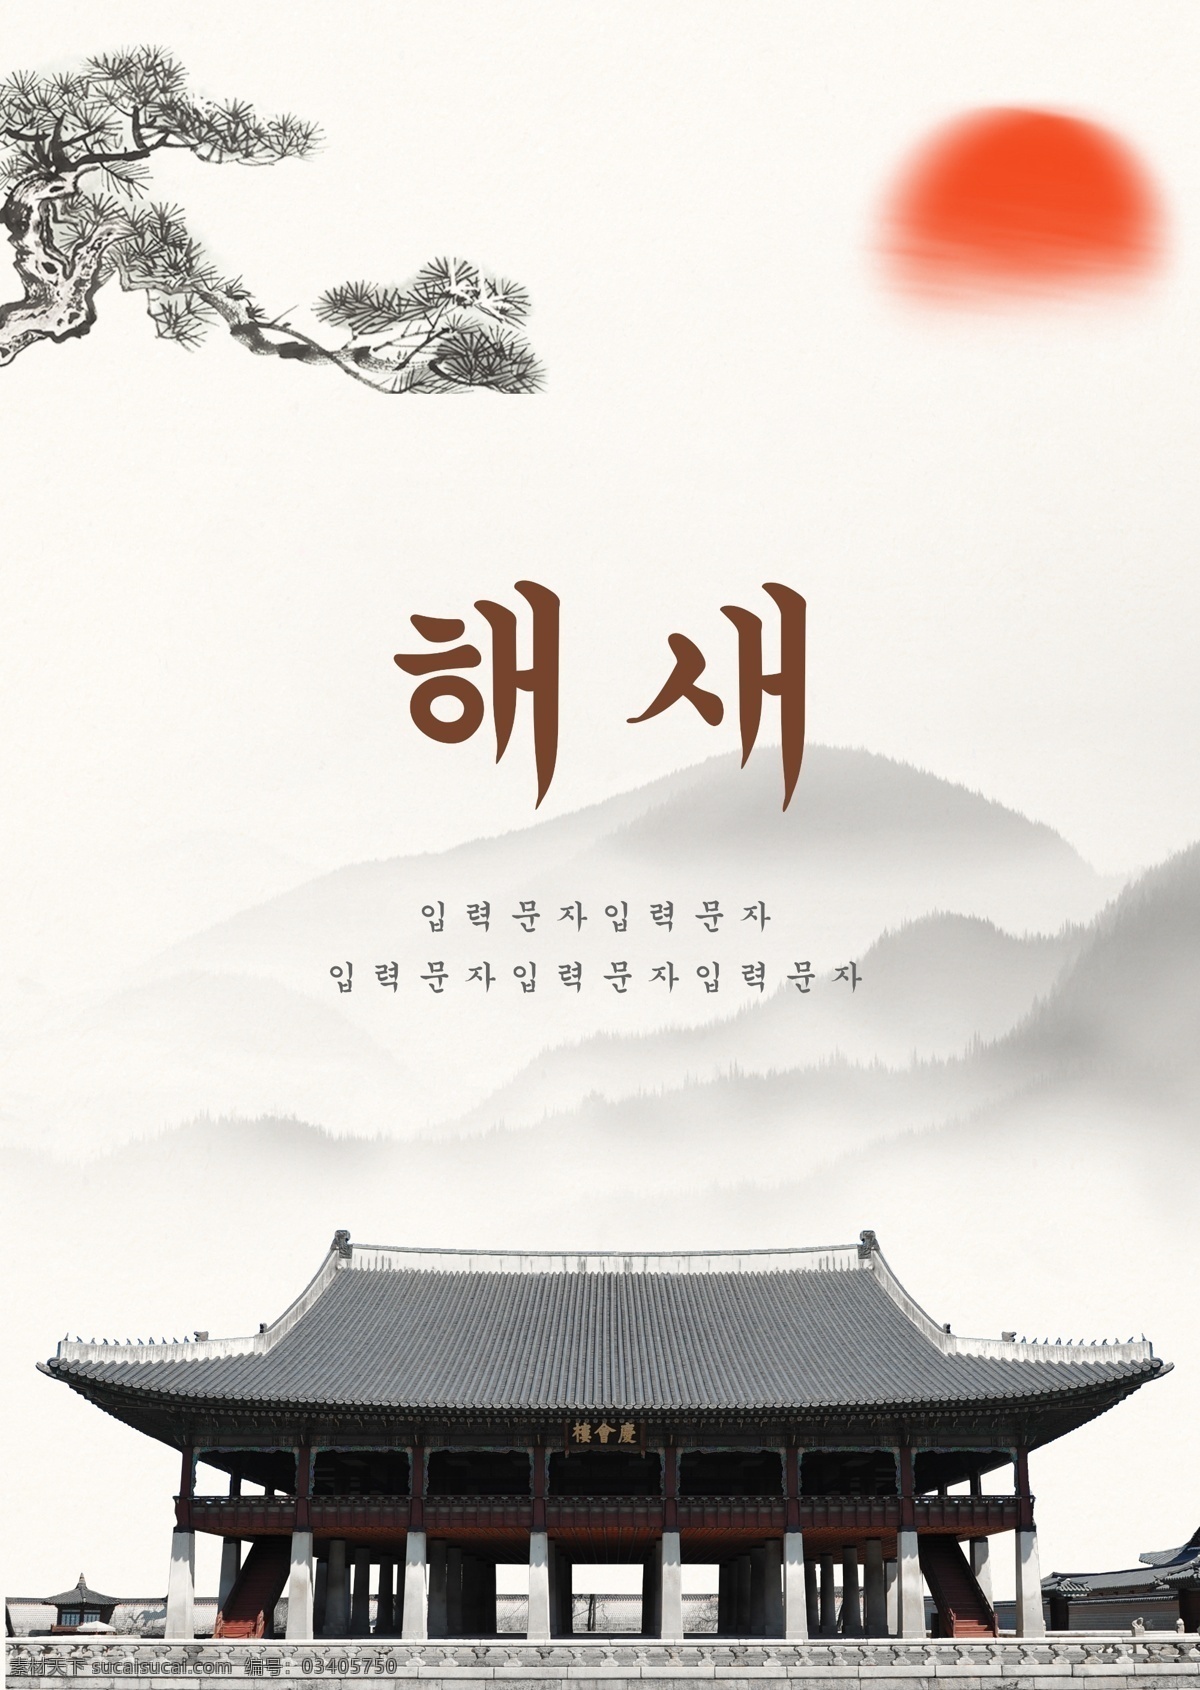 风景 墨水 古典 韩国 新年 海报 景观 墨 朝鲜的 太阳 松树 檐 宫殿 房屋